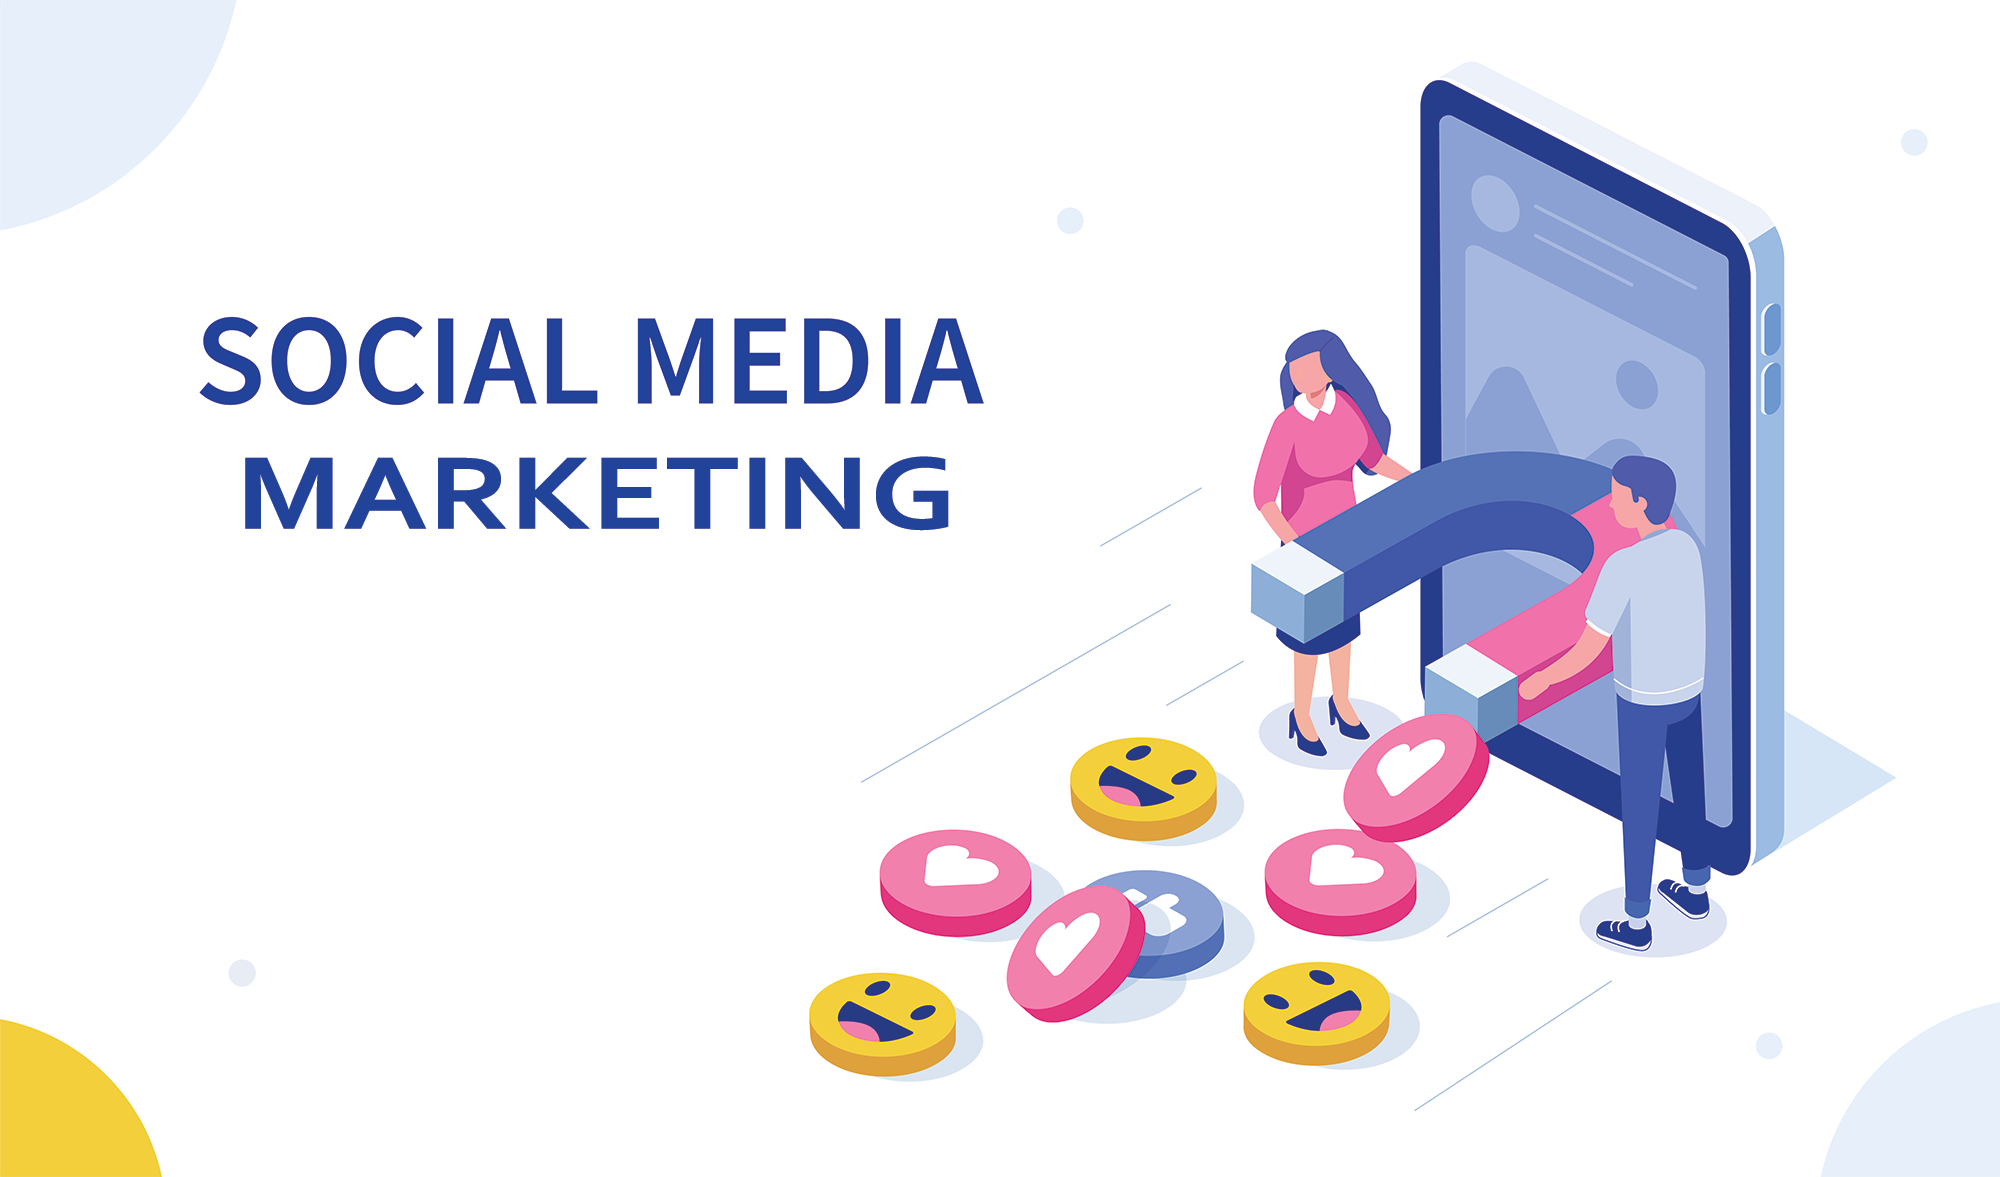 social media marketing services